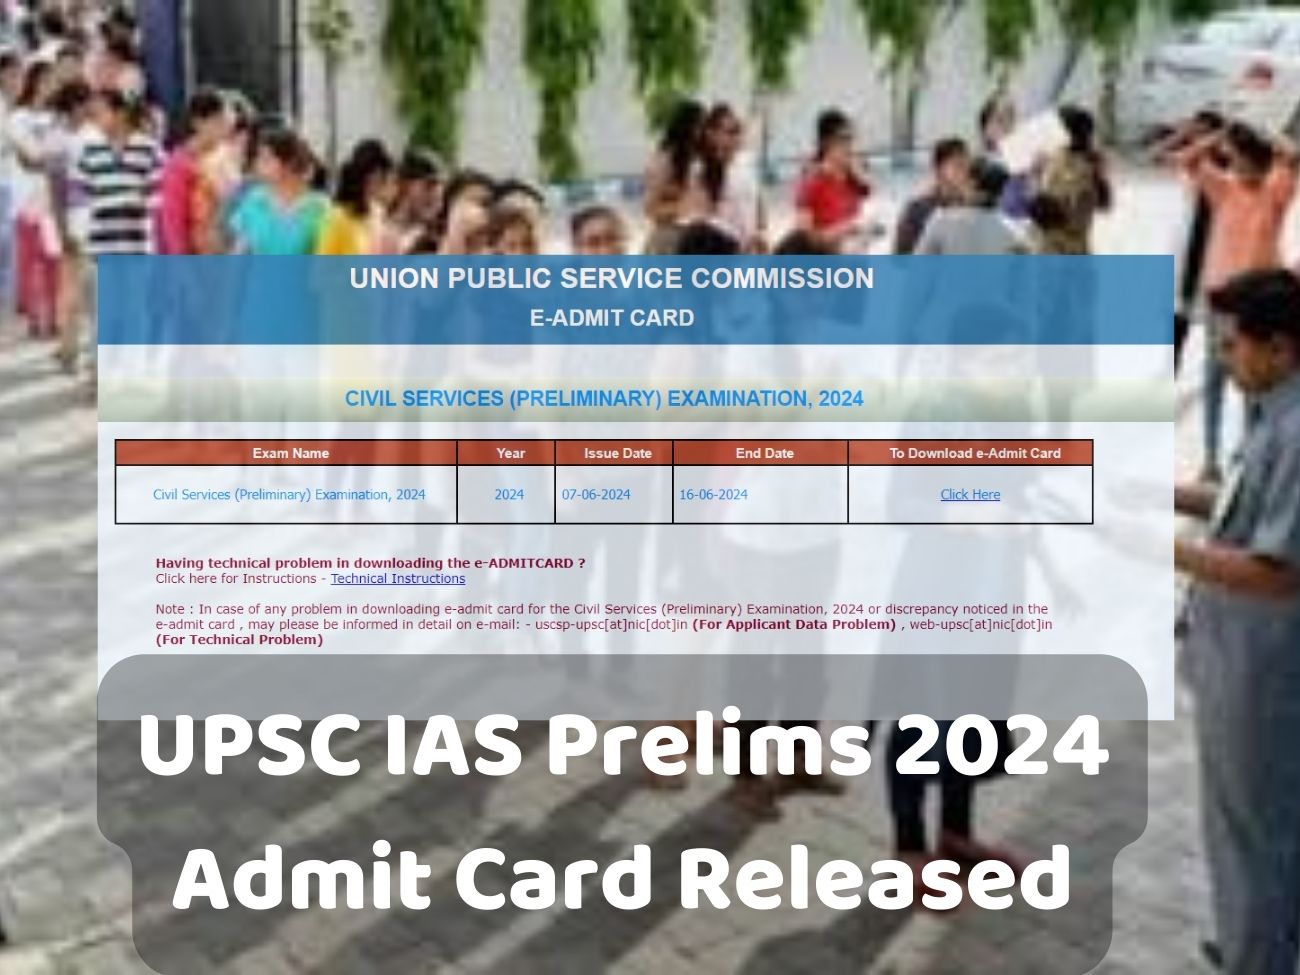 UPSC सिविल सेवा प्रारंभिक परीक्षा 2024: एडमिट कार्ड जारी, डाउनलोड करने के तरीके